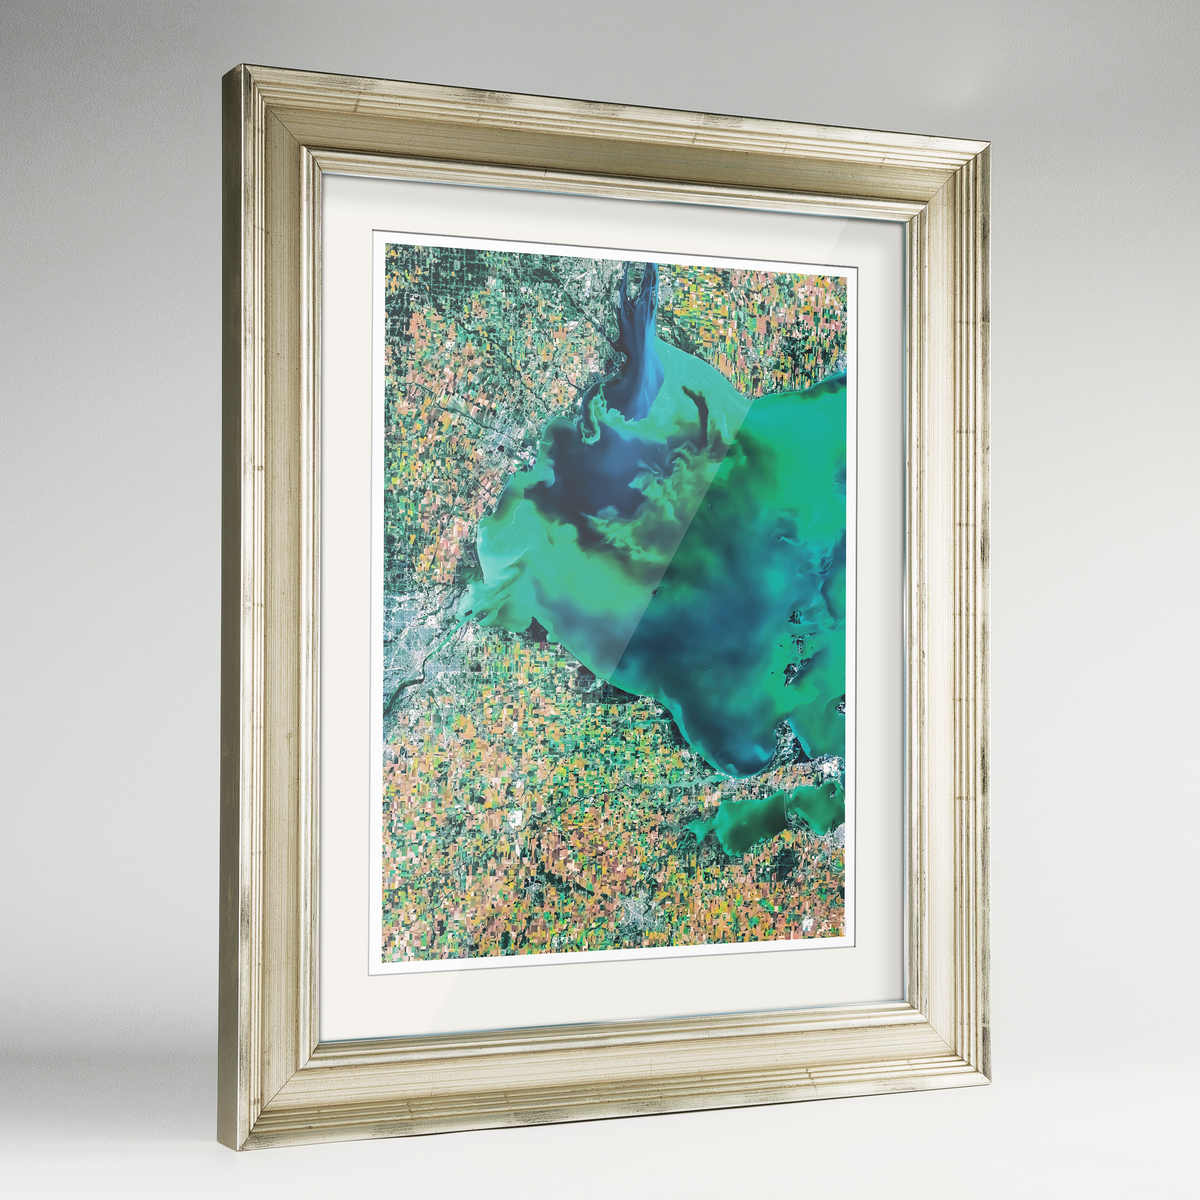 Lake Erie Earth Photography Art Print - Framed